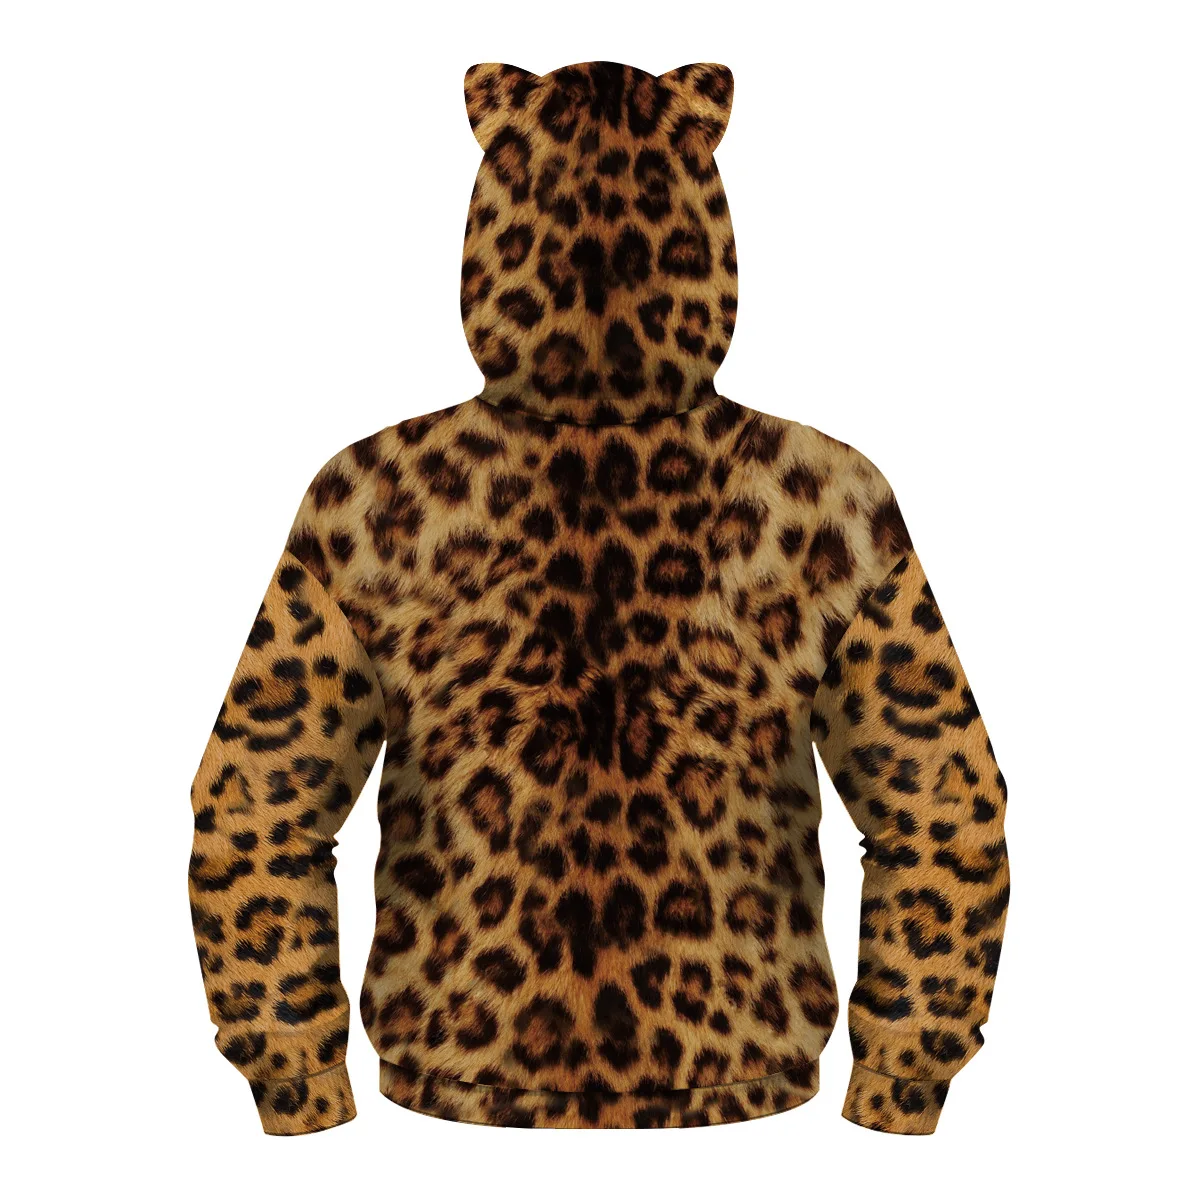 Властный Тигр куртка для мальчиков повседневные толстовки для мальчиков с 3D Цифровым принтом свободная весенне-Осенняя детская куртка одежда для детей от 5 до 12 лет